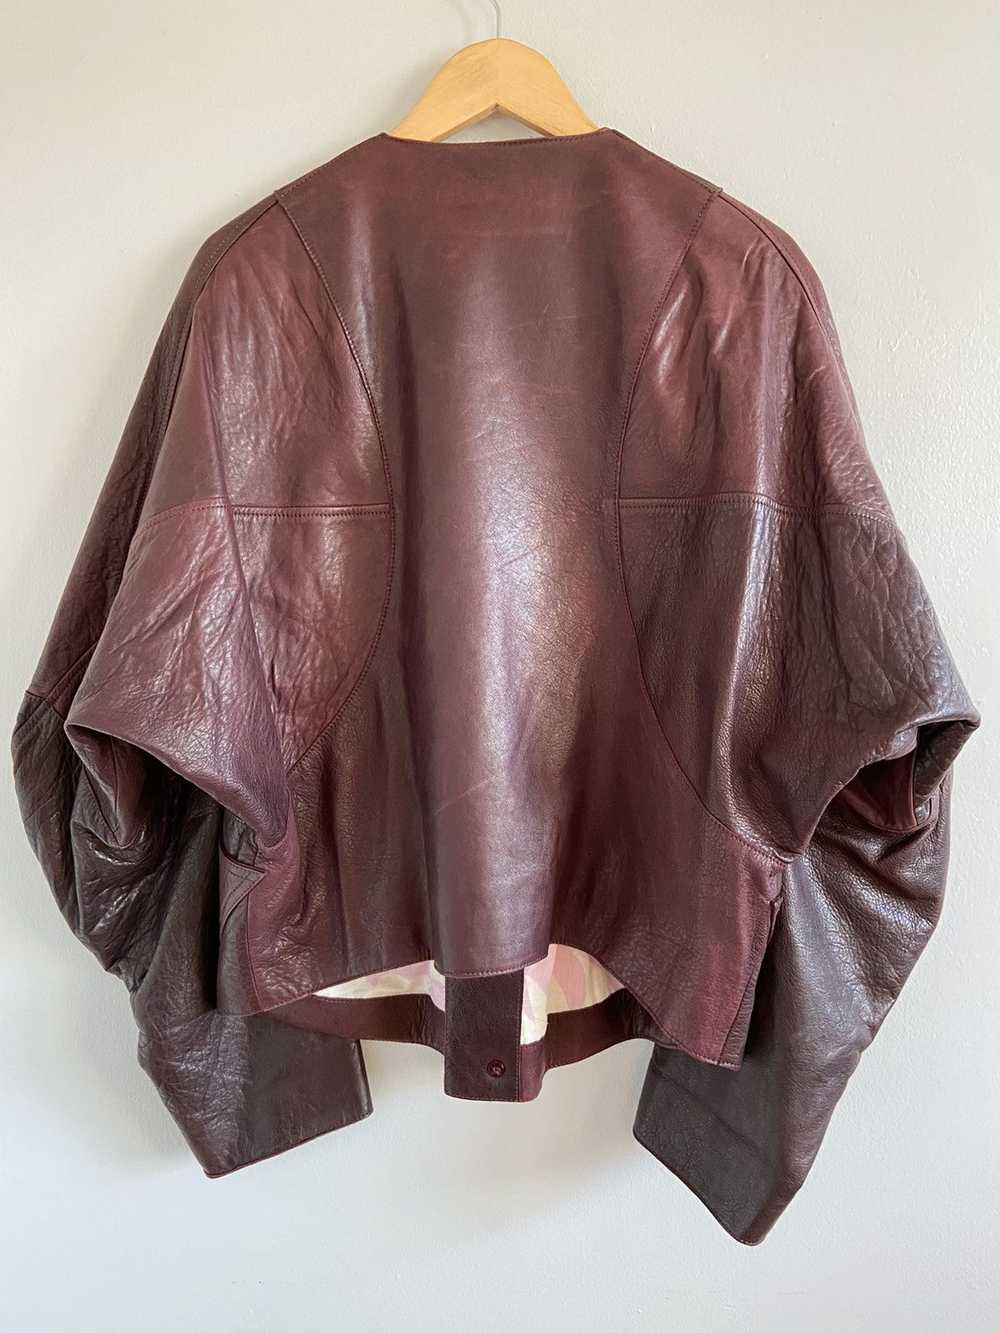 Vivienne Westwood F/W17 Ovine Leather Jacket - image 3